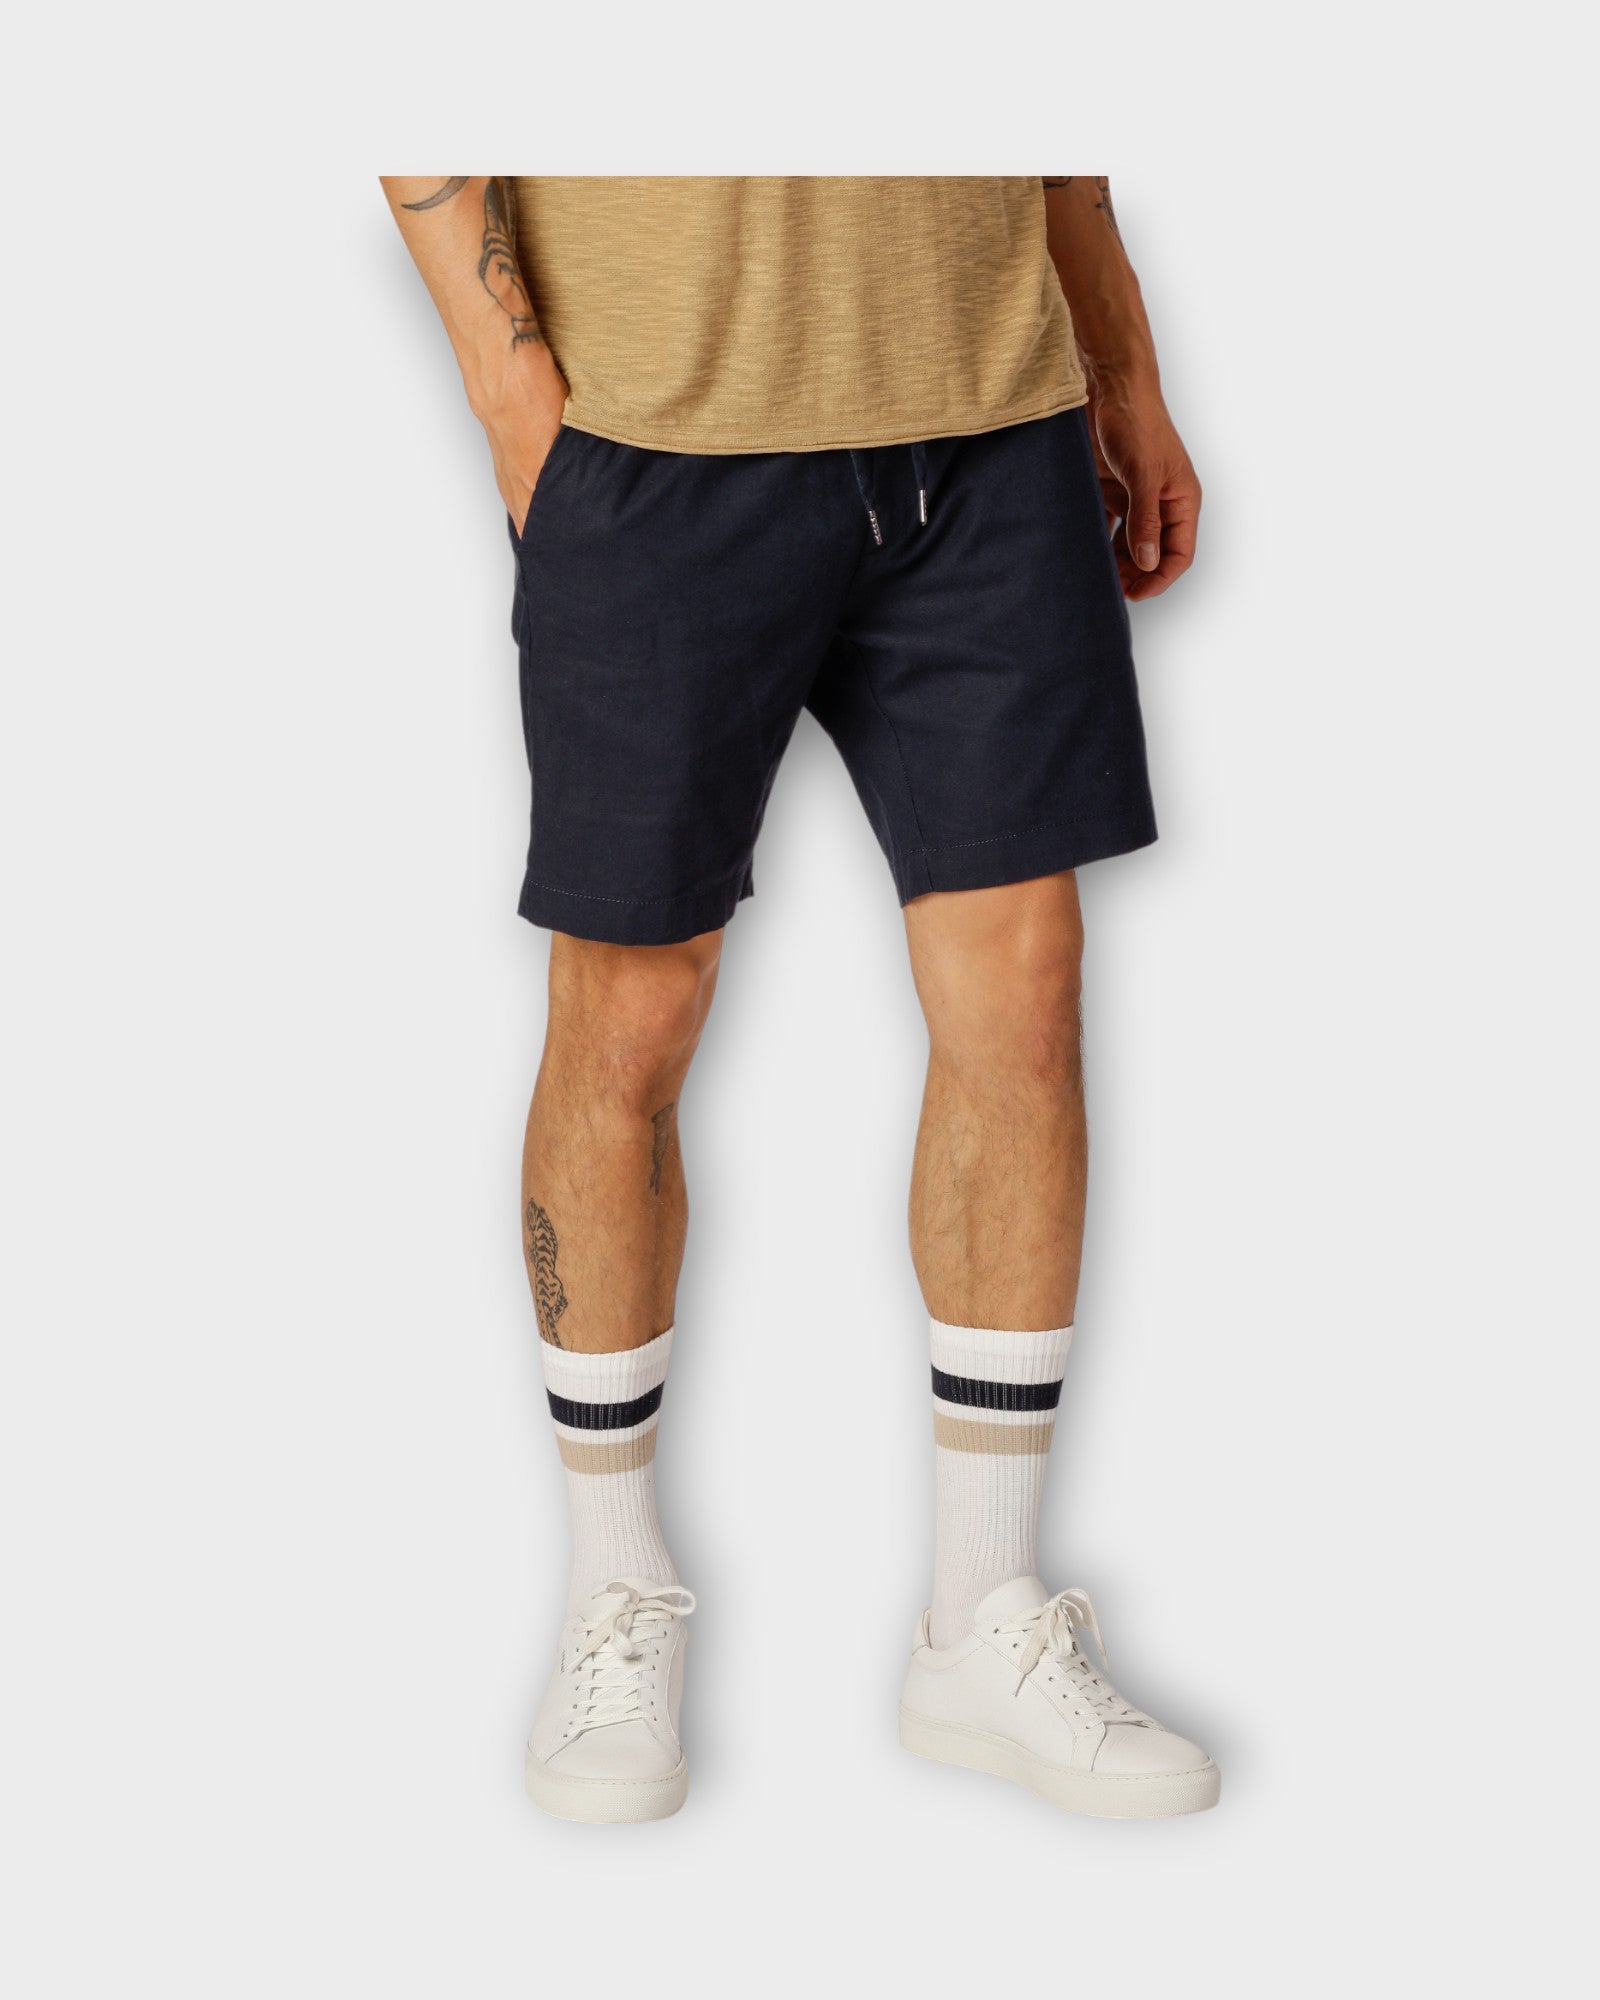 Barcelona Cotton Linen Shorts Navy fra Clean Cut Copenhagen. Mørkeblå hør shorts til mænd. Her set på model forfra.